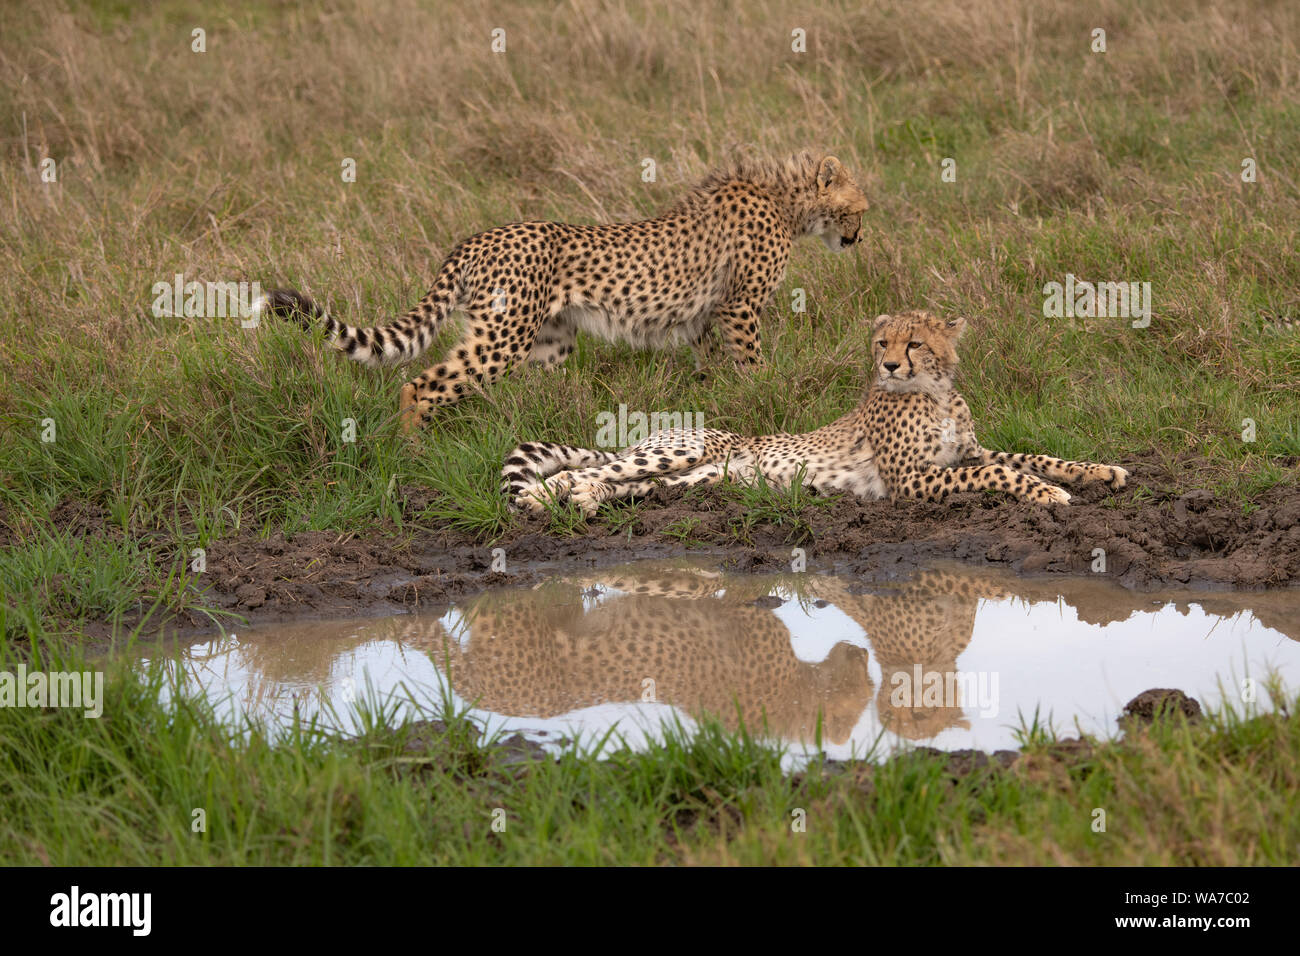 Der Gepard spiegelt sich im Wasserloch wider, während ein zweiter Gepard im Hintergrund im Masai Mara, Kenia, spaziert Stockfoto